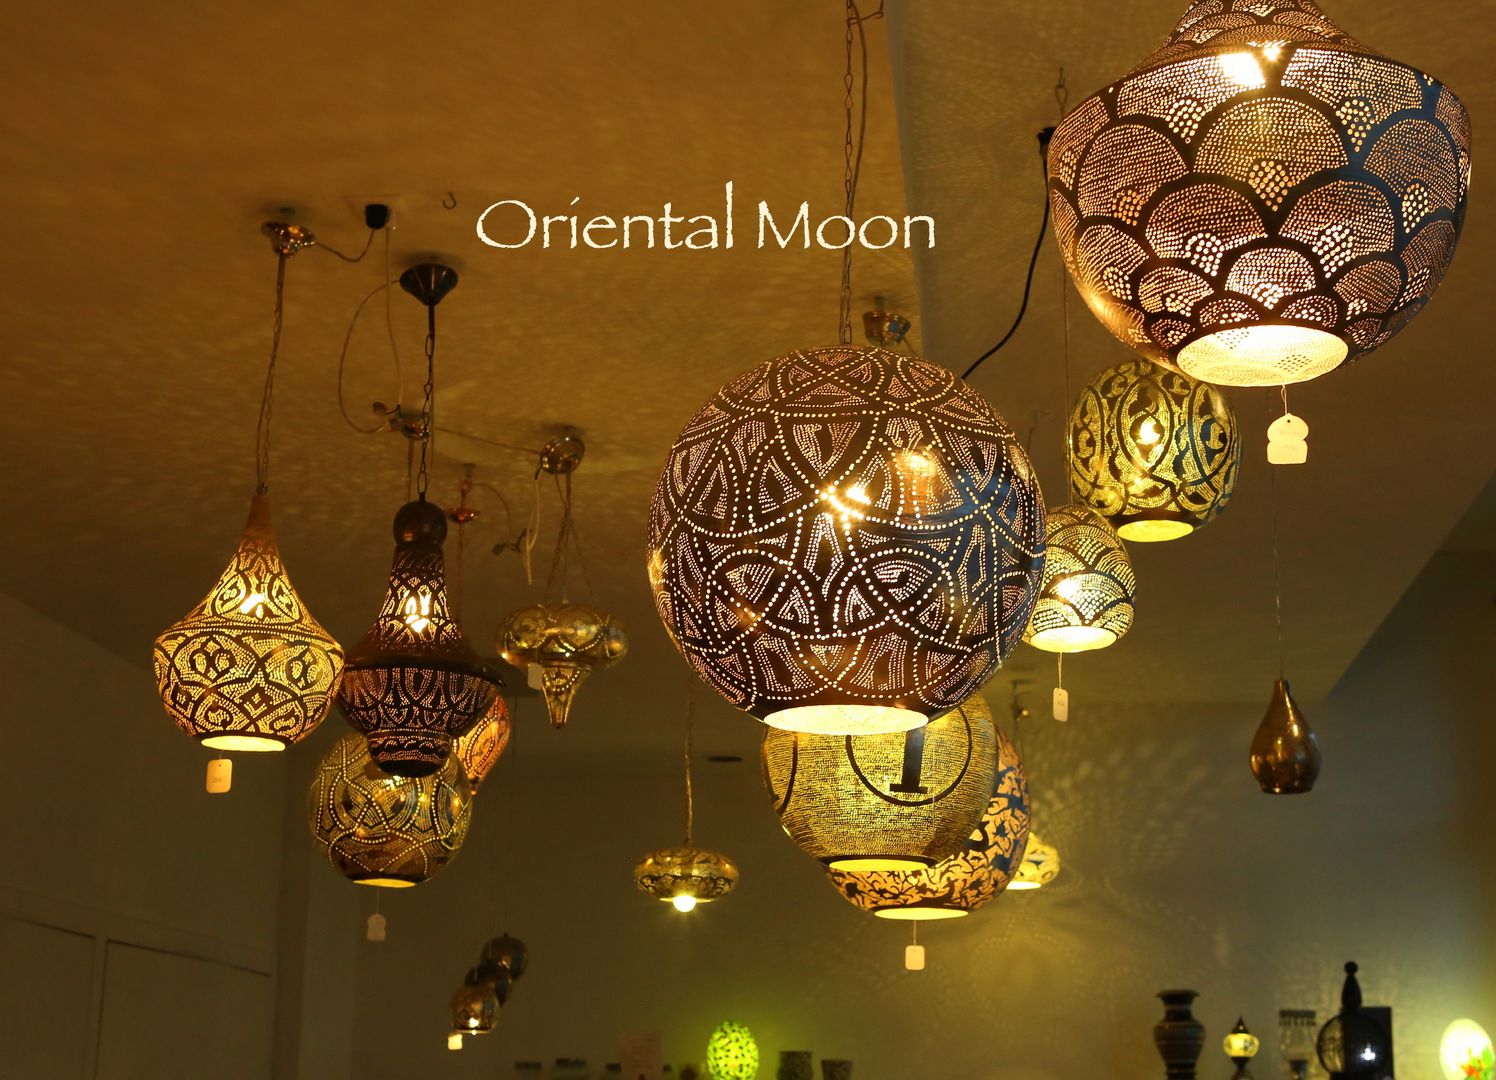 Orientalische Boden/Tisch-Lampen, Oriental Moon Oriental Moon Living room Copper/Bronze/Brass Lighting